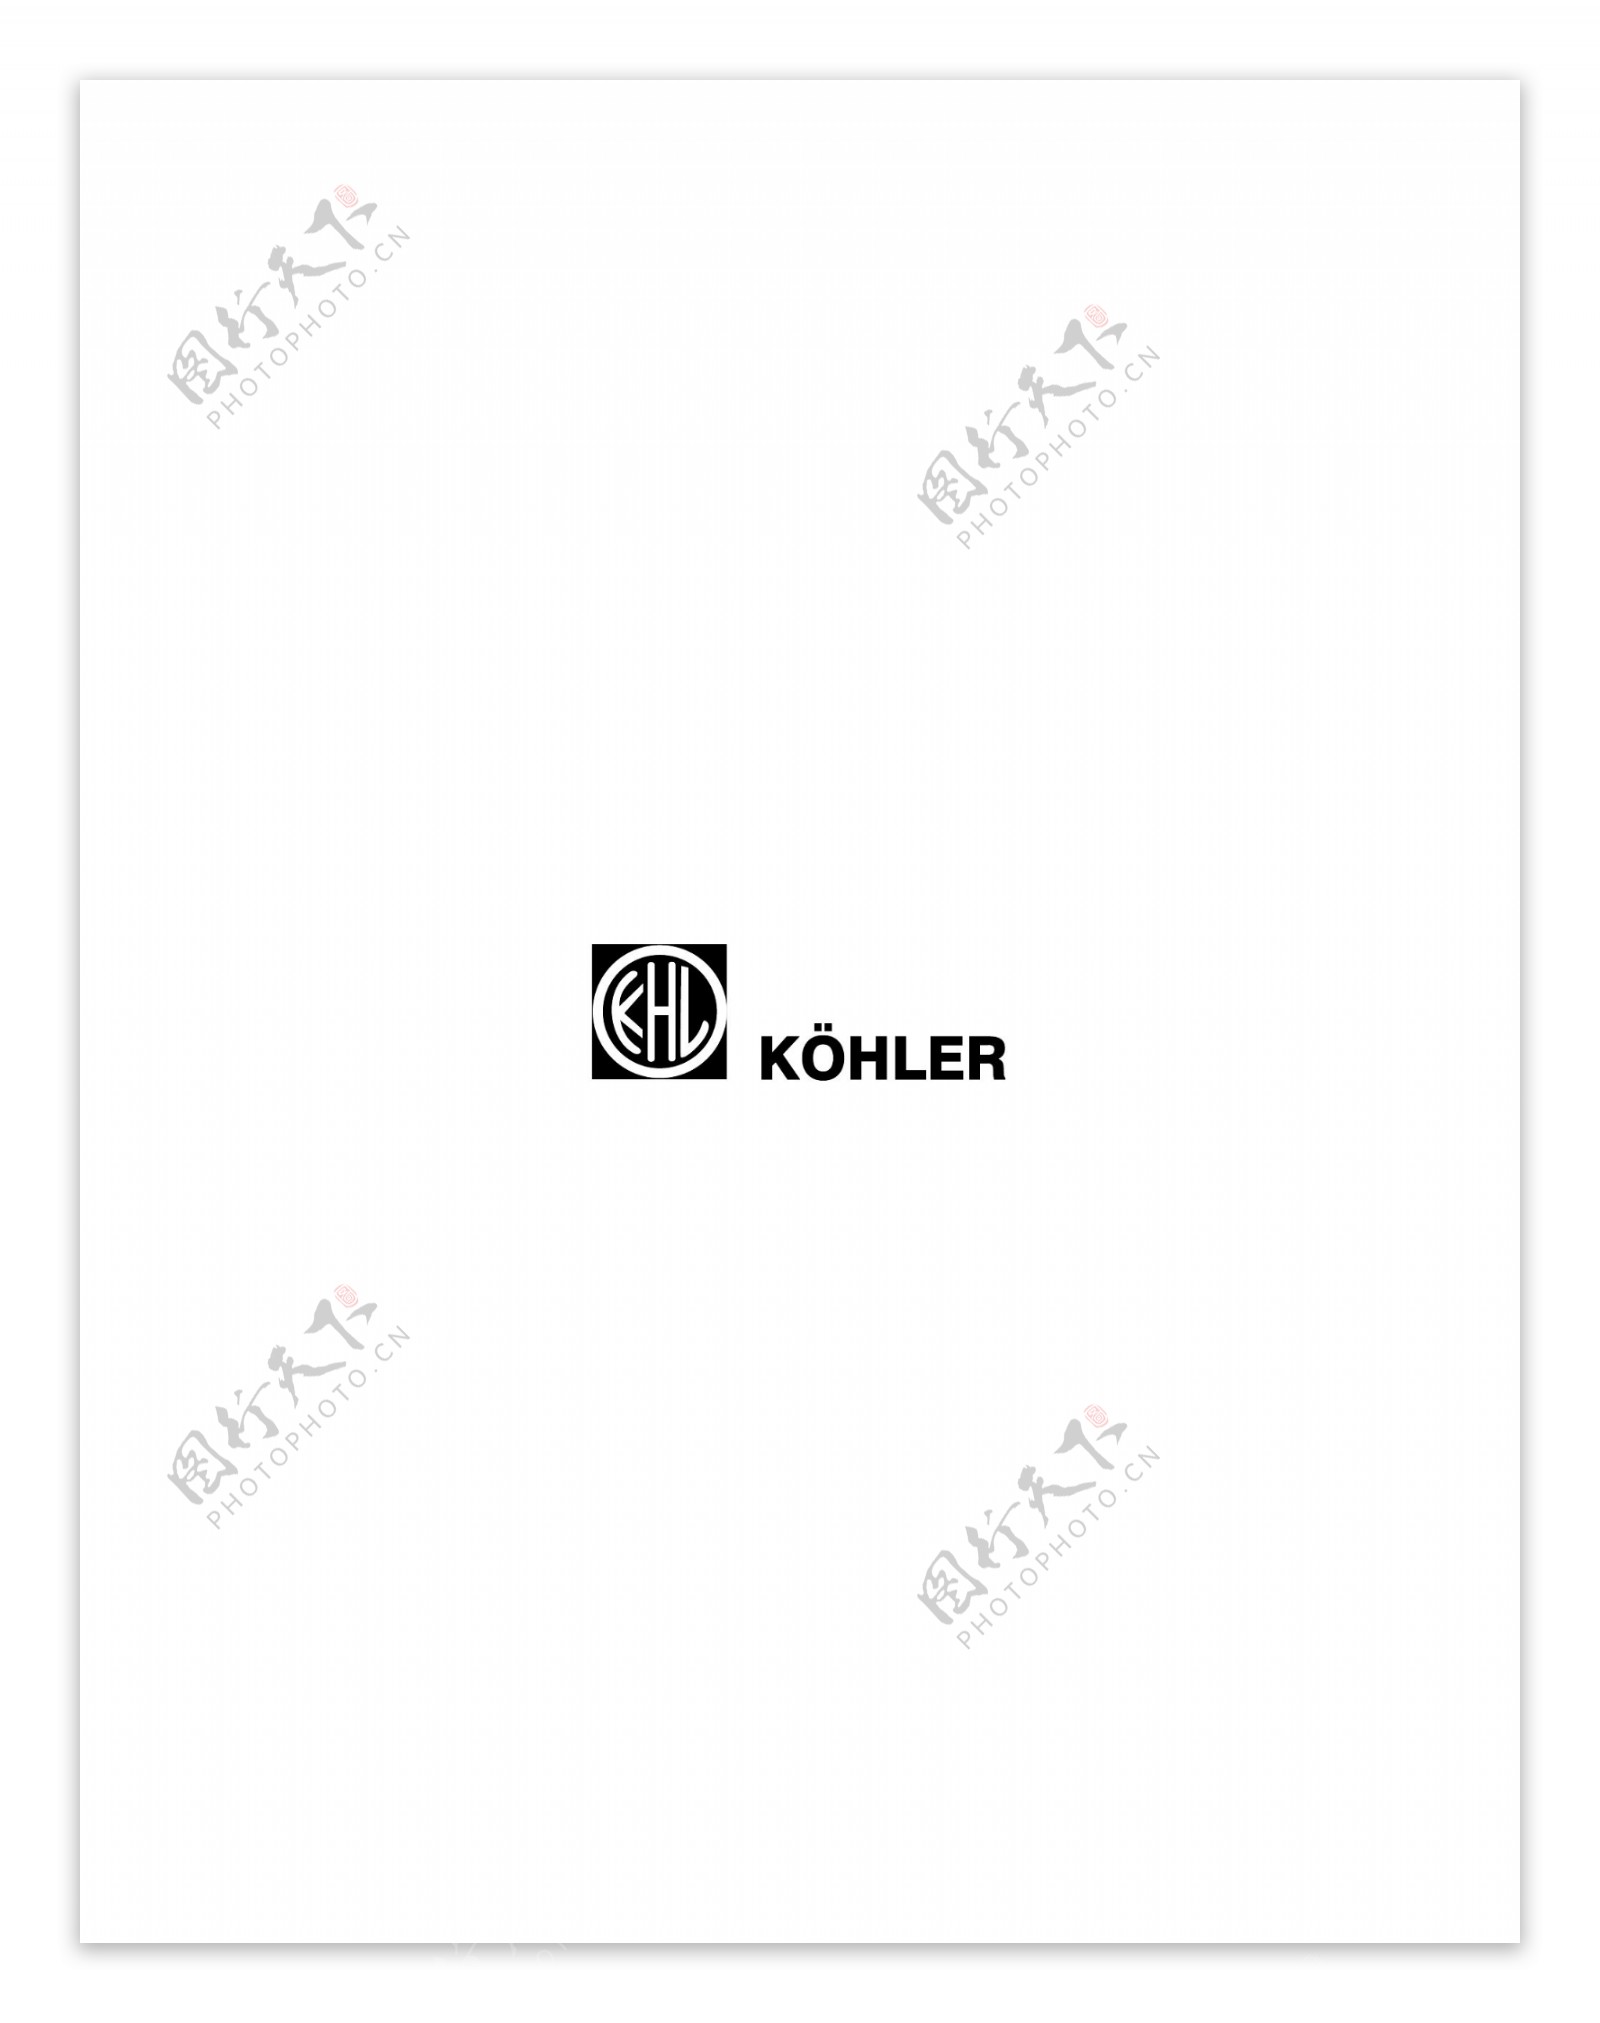 KHLKohlerlogo设计欣赏KHLKohler下载标志设计欣赏